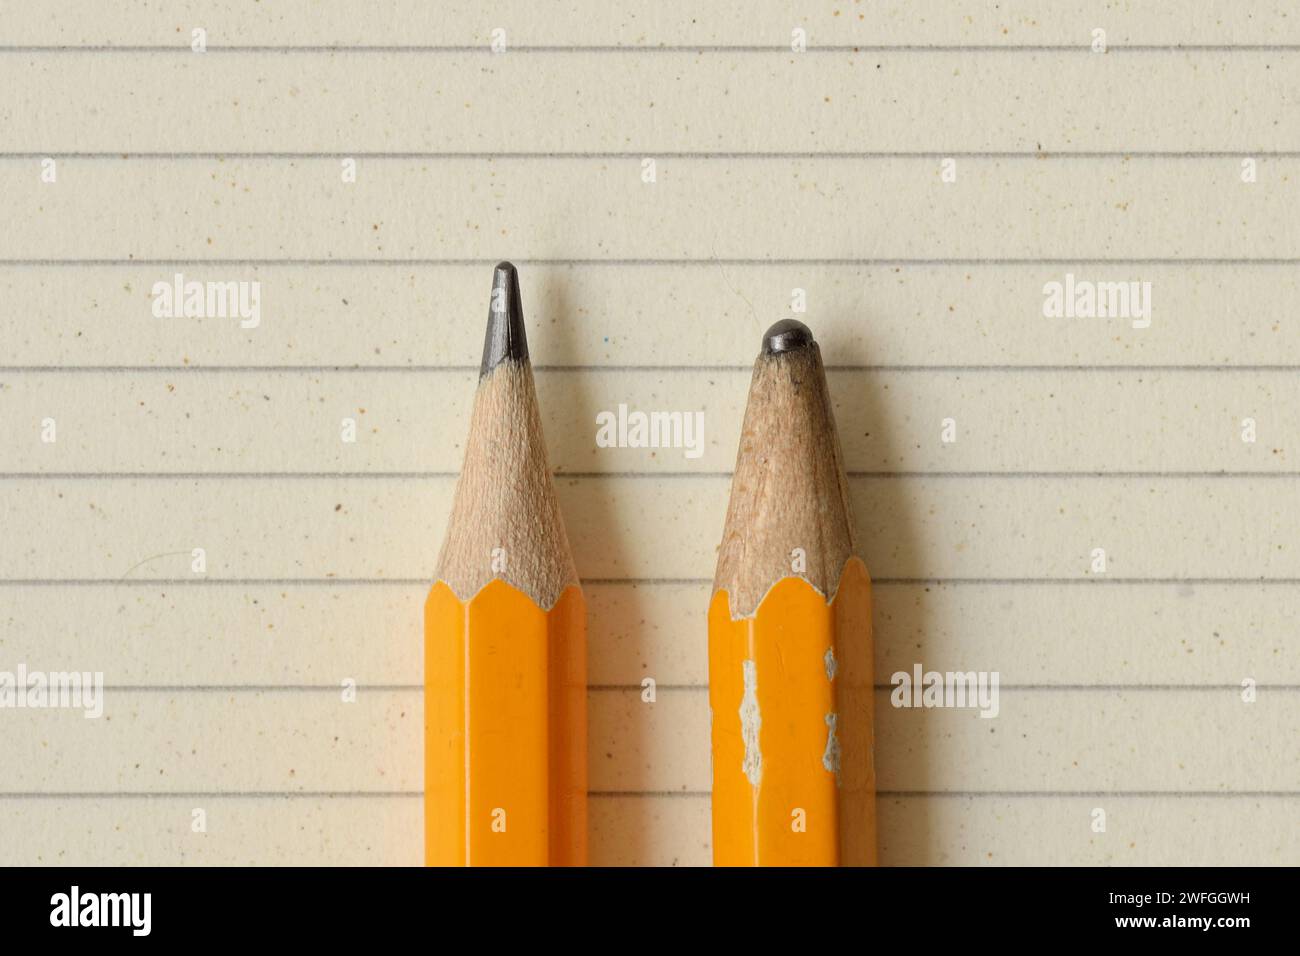 Scharfer Bleistift und stumpfer Bleistift auf liniertem Notizbuchpapier – Konzept von Erfolg, Innovation und Kreativität Stockfoto